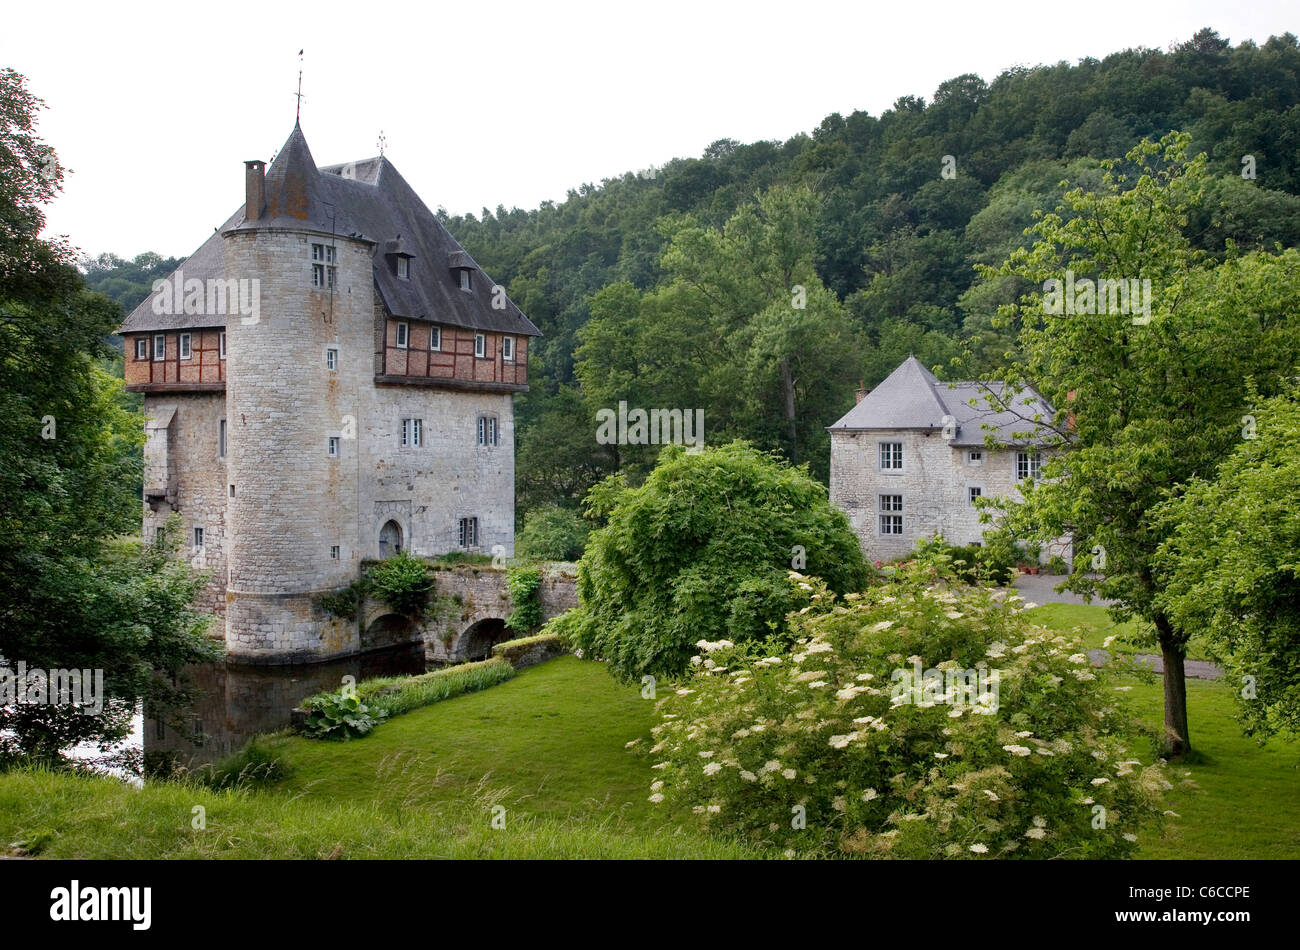 Le 13e siècle château de Carondelet à Crupet, Ardennes Belges, Namur, Wallonie, Belgique Banque D'Images